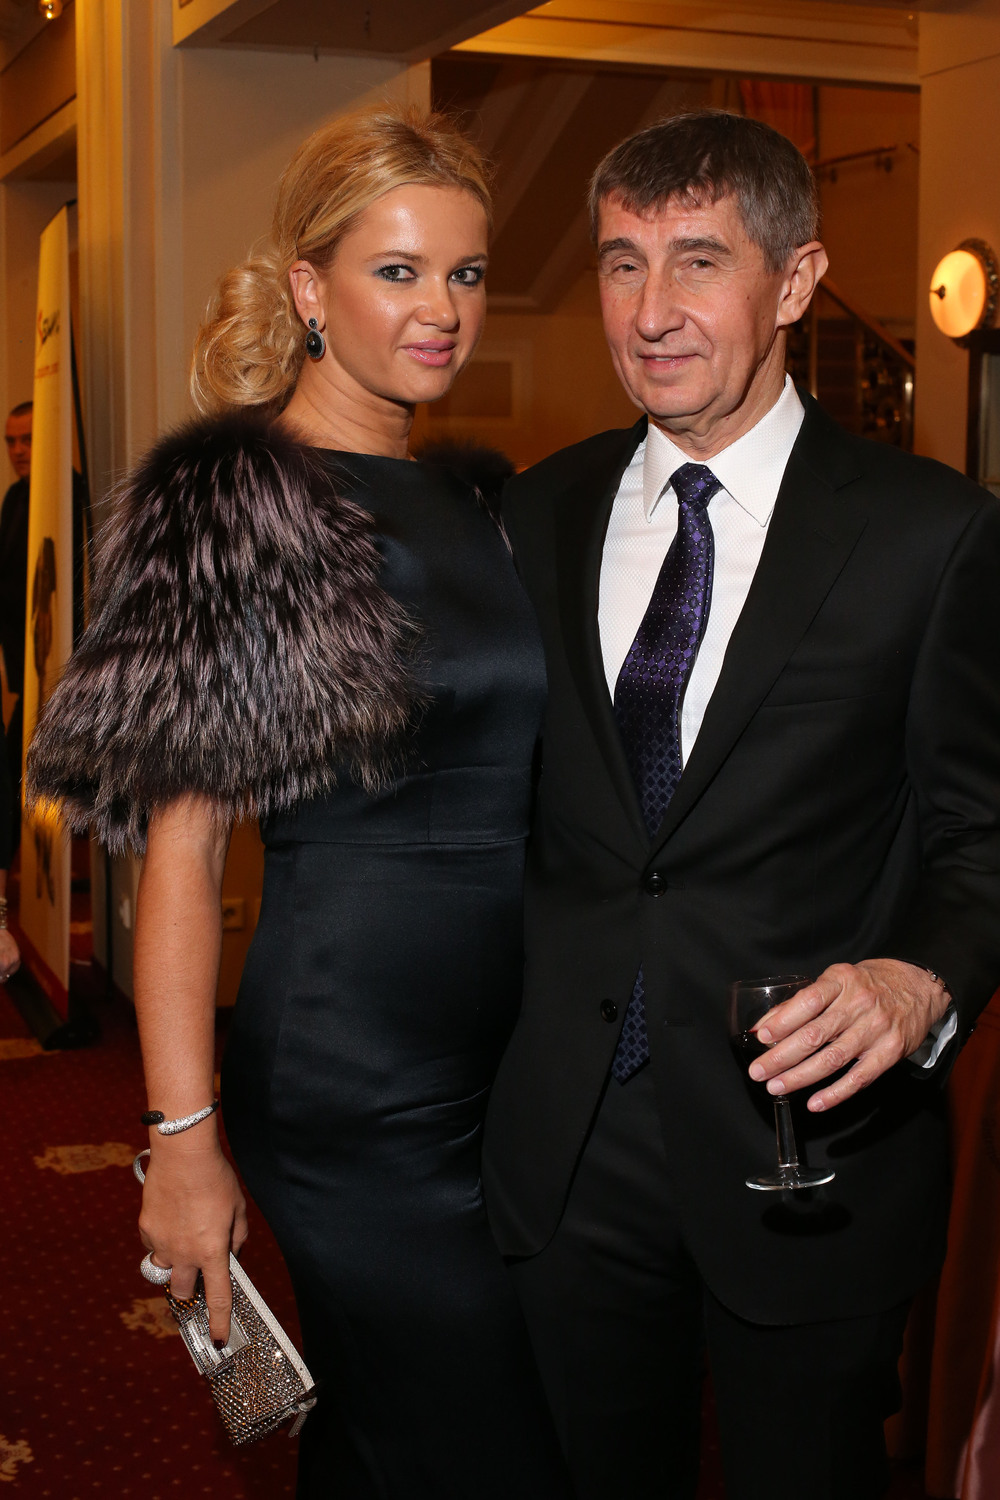 Andrej Babiš s partnerkou Monikou.